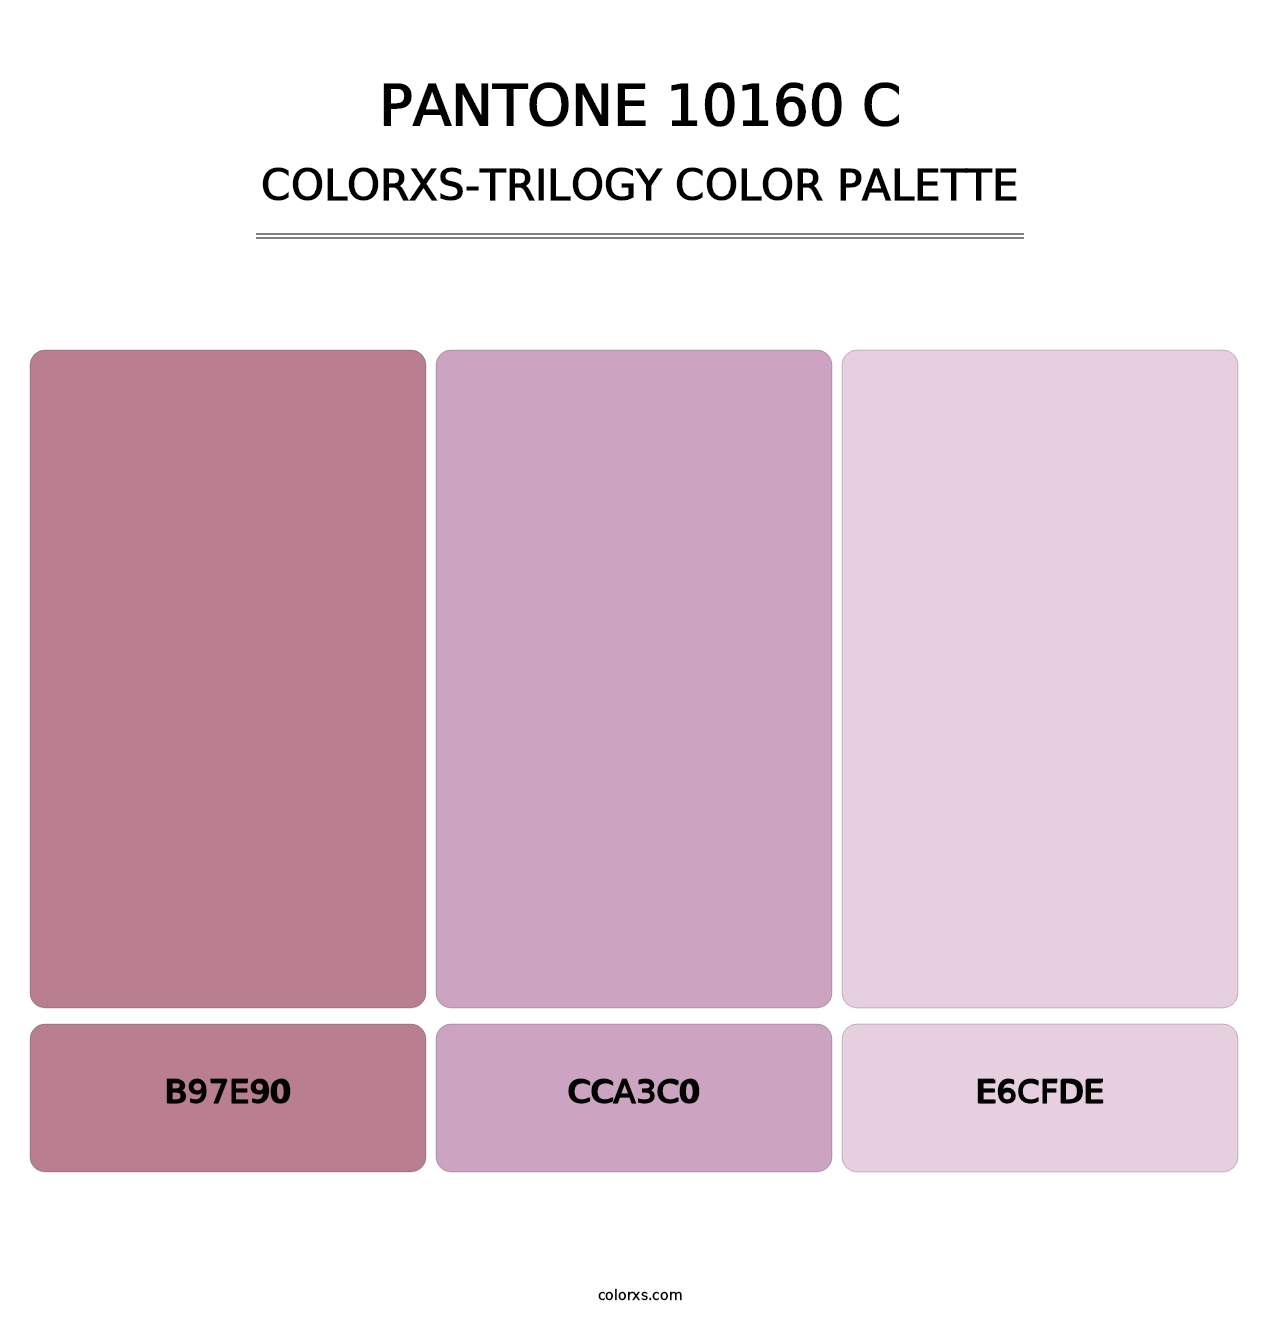 PANTONE 10160 C - Colorxs Trilogy Palette